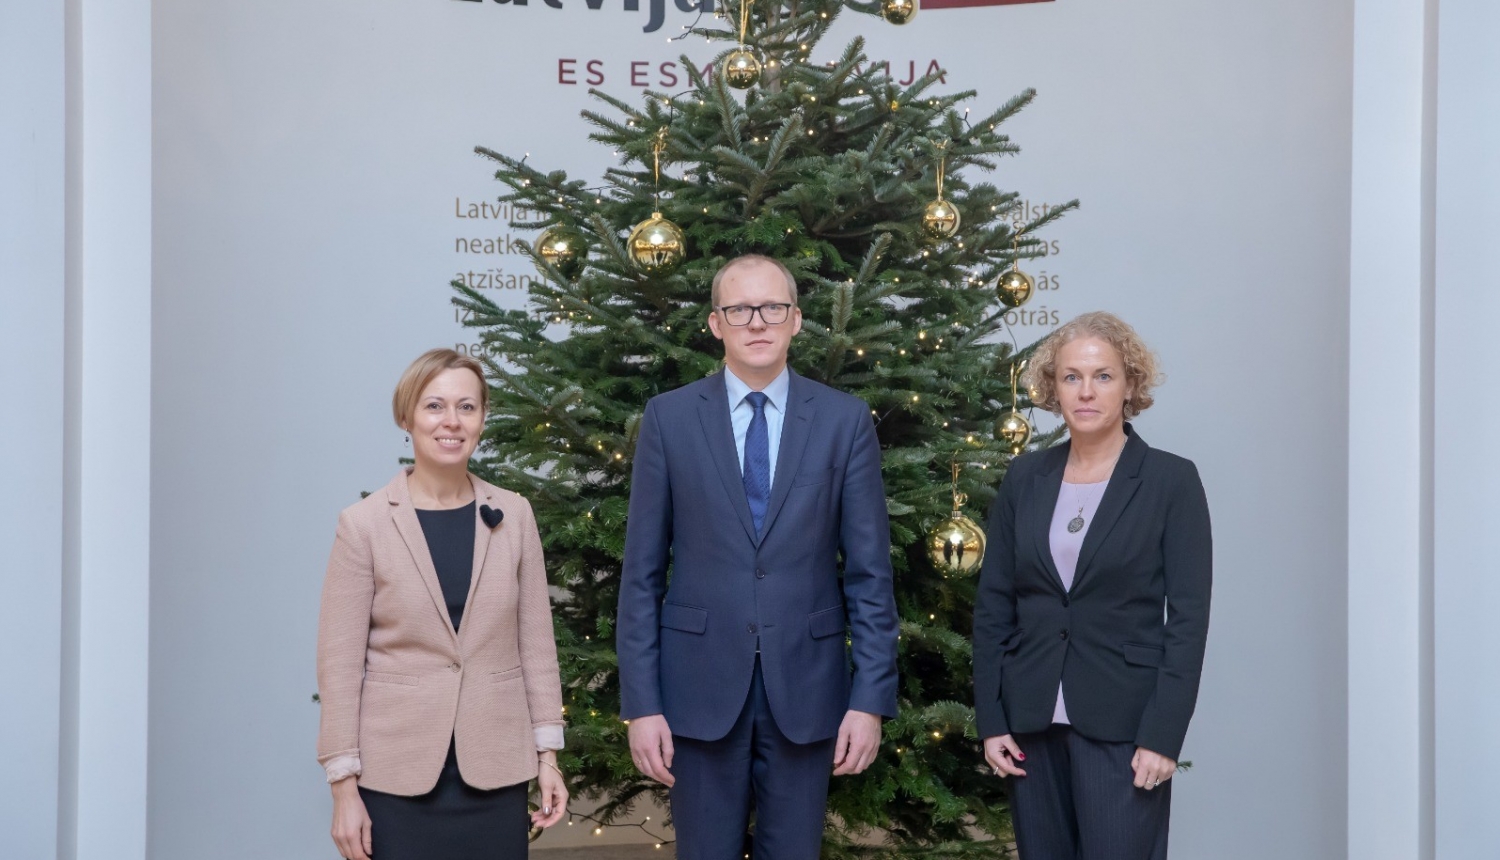 Ārlietu ministrija, Eiropas Komisijas pārstāvniecība Latvijā un Eiropas Parlamenta birojs Latvijā vienojas par turpmāko sadarbību Eiropas Savienības jautājumu komunikācijā 2023. gadā